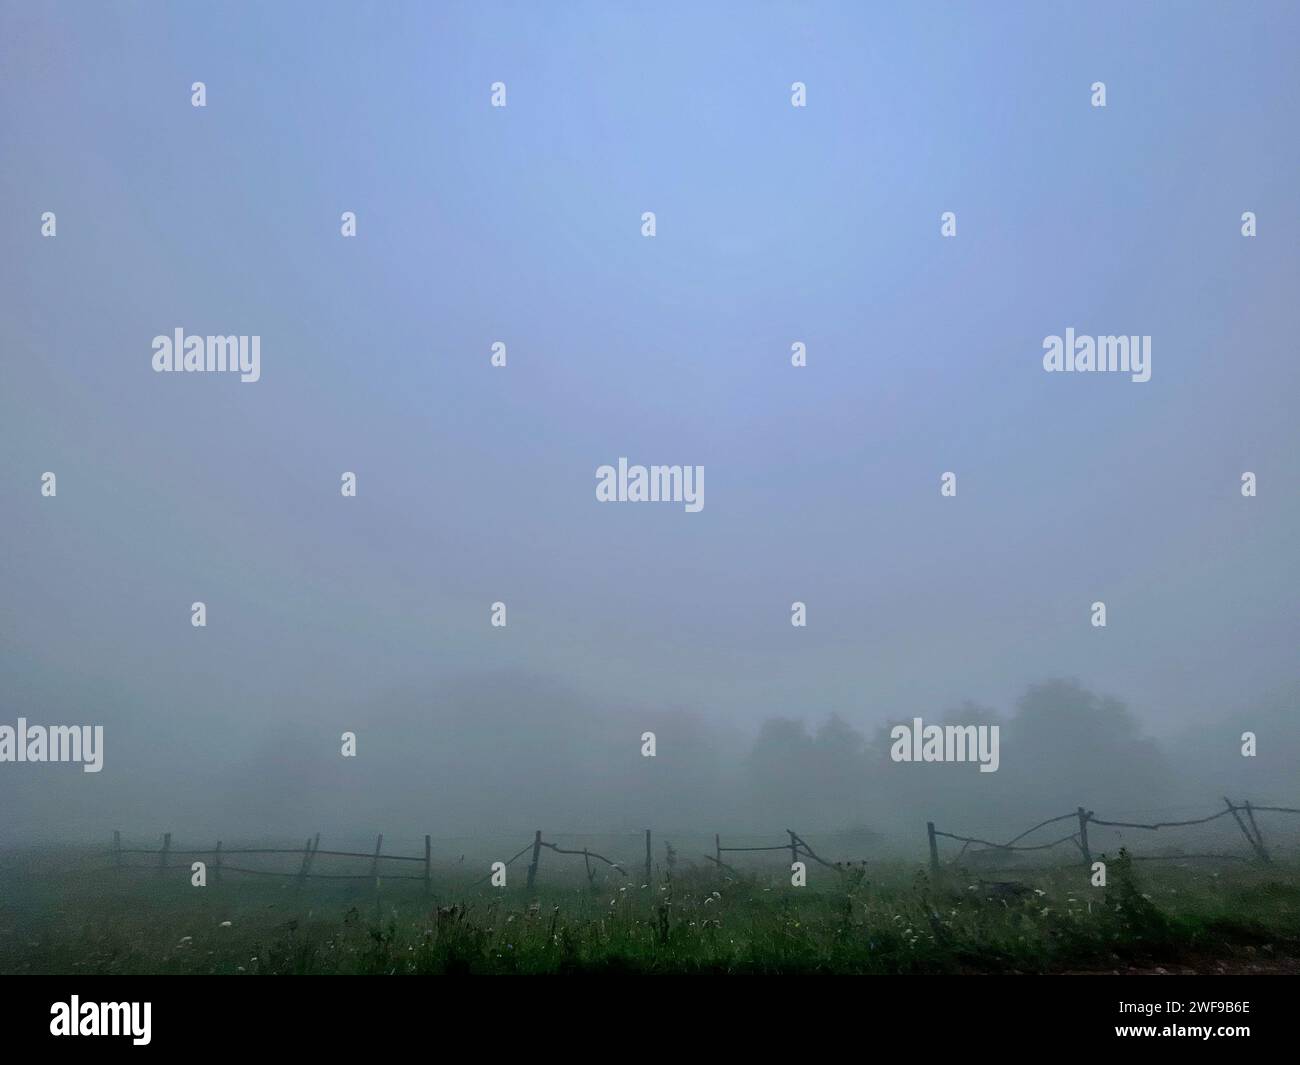 A person guiding a horse through a misty green field Stock Photo